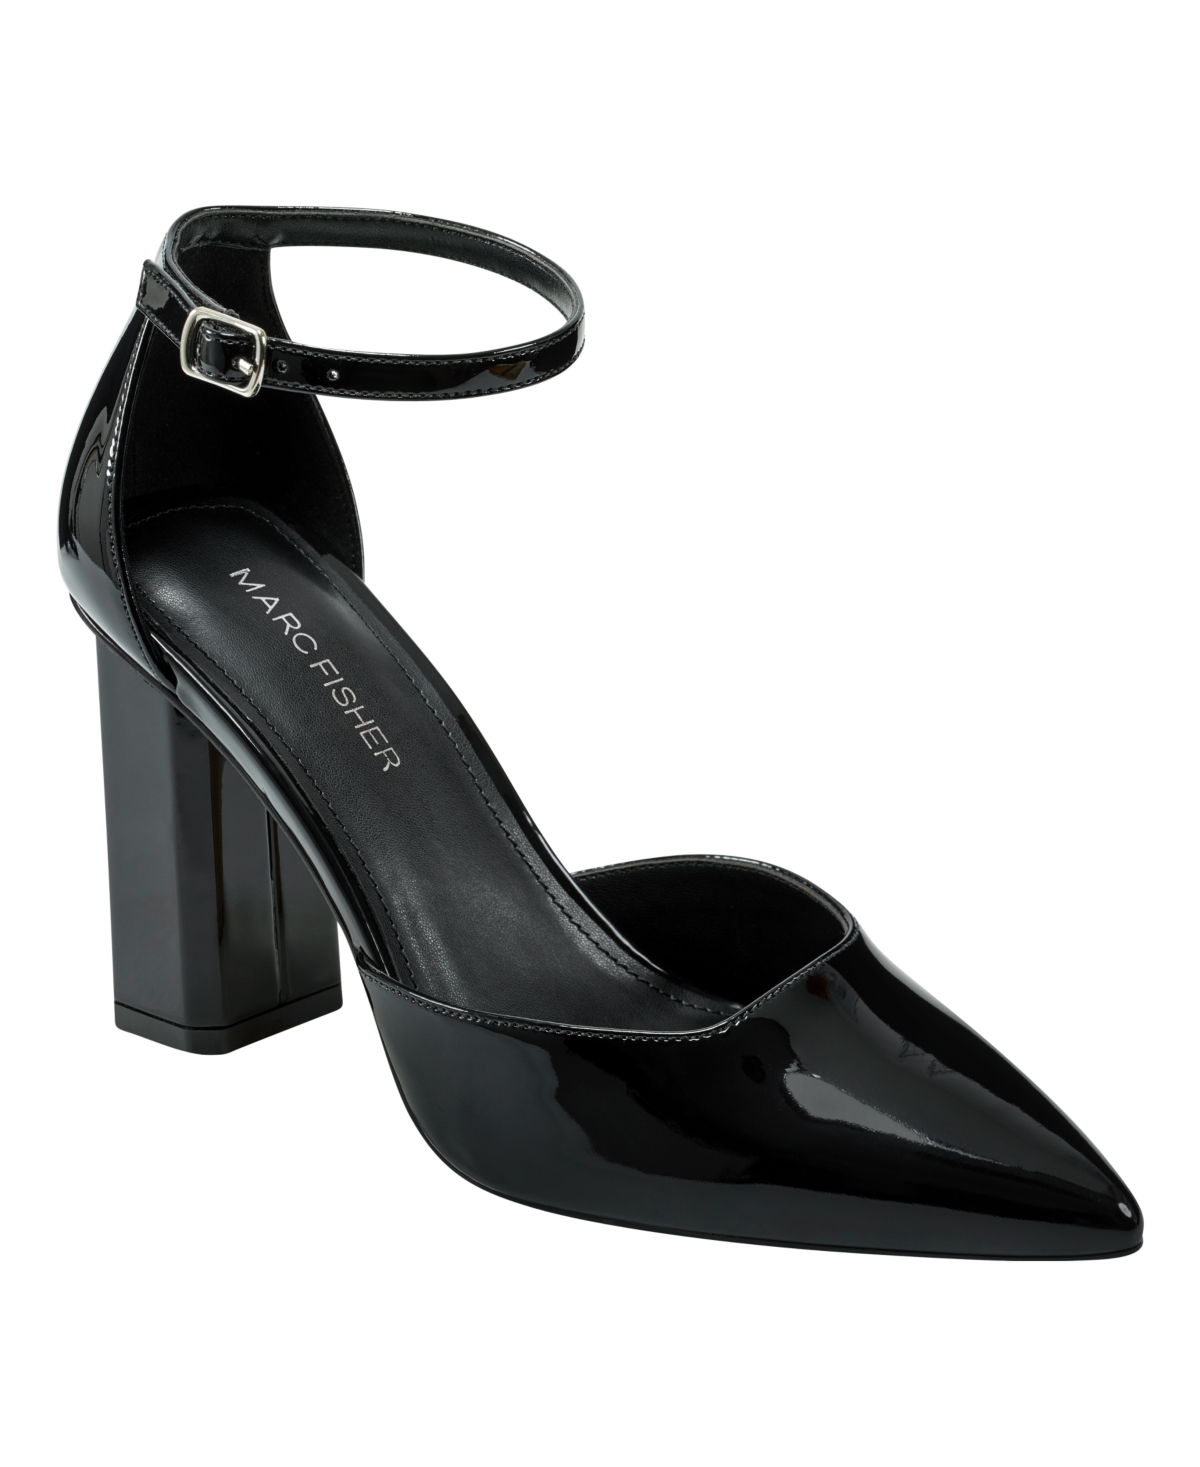 Women's Demeter Adjustable Ankle Strap Dress Pumps - Black Patent - Faux Patent Leather